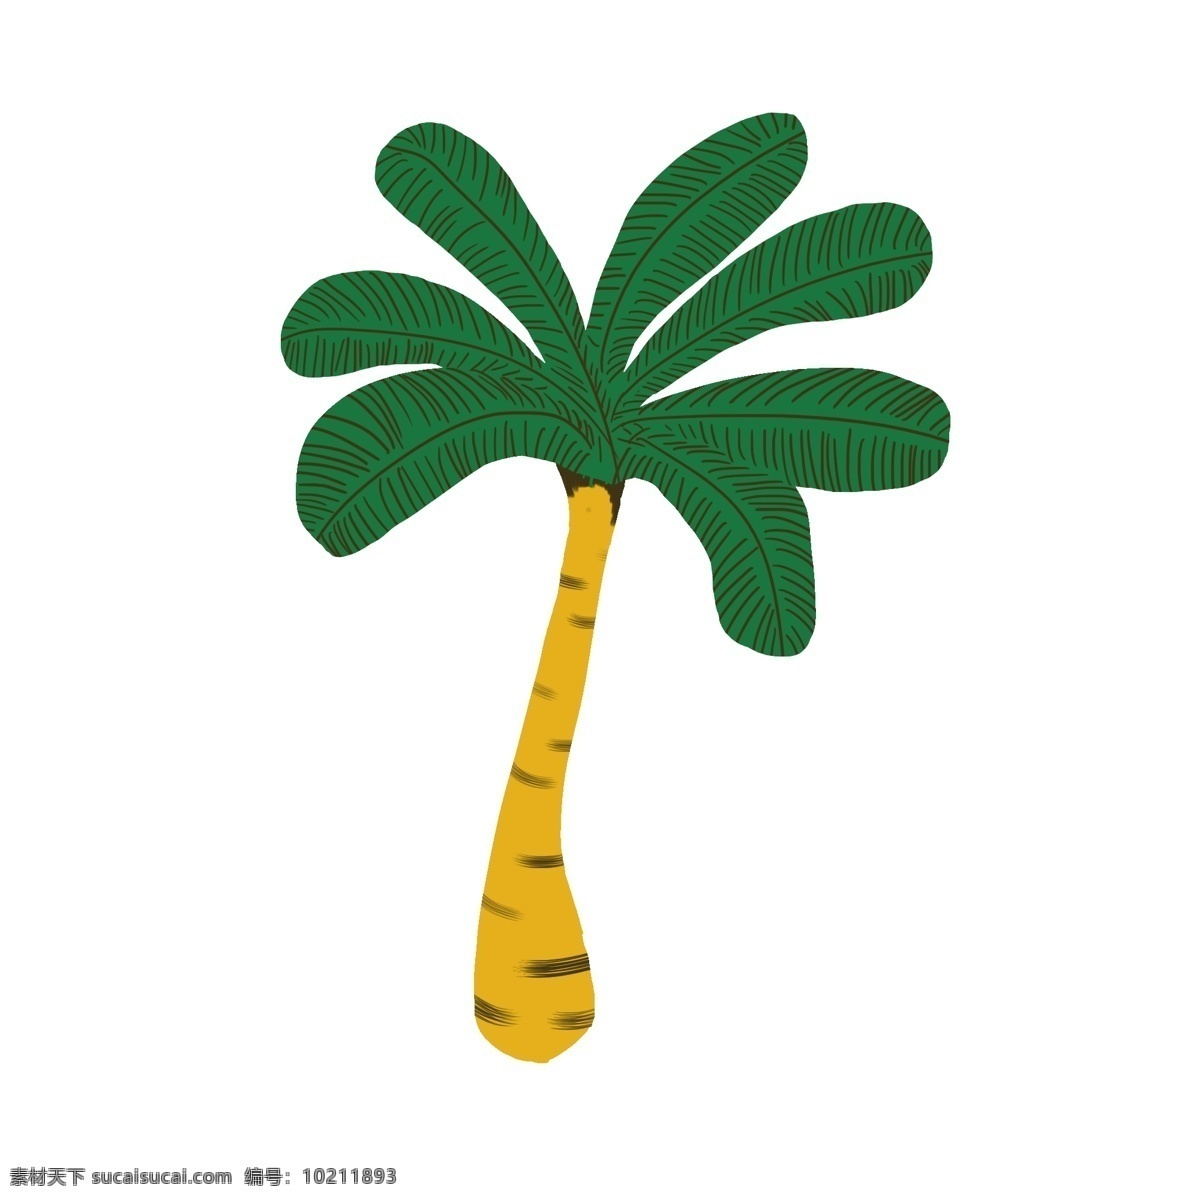 海边 颗 椰子树 绿色 树叶 黄色 树干 美式风格 海边的椰子树 小清新色调 简洁椰子树